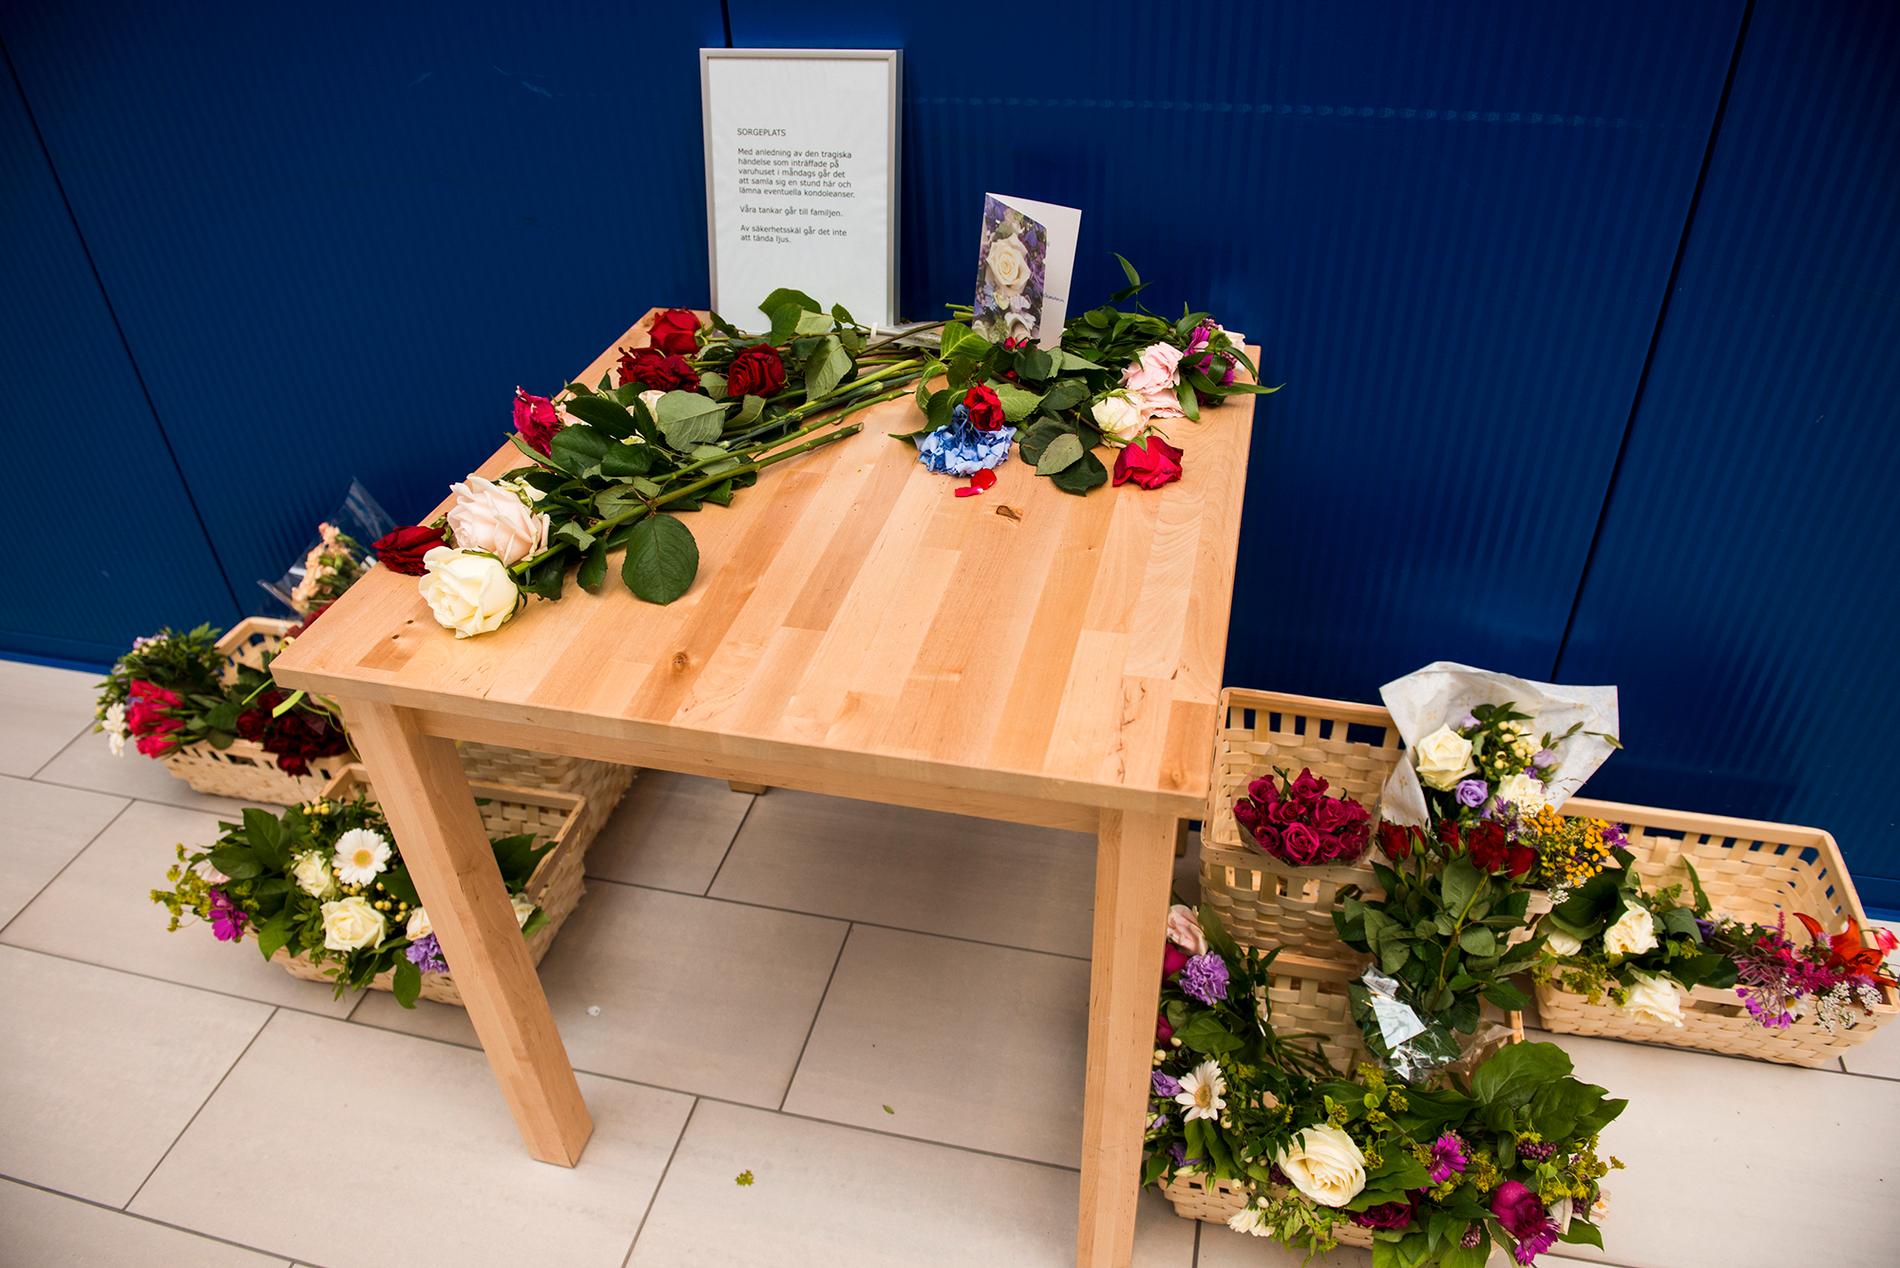 Ikea har ställt ut ett bord där folk kan lägga blommor och skriva några rader till minne av de två som dödades i en knivattack på varuhuset på måndagen. Varuhuset öppnadeigen på onsdagen efter att hållit stängt under tisdagen.